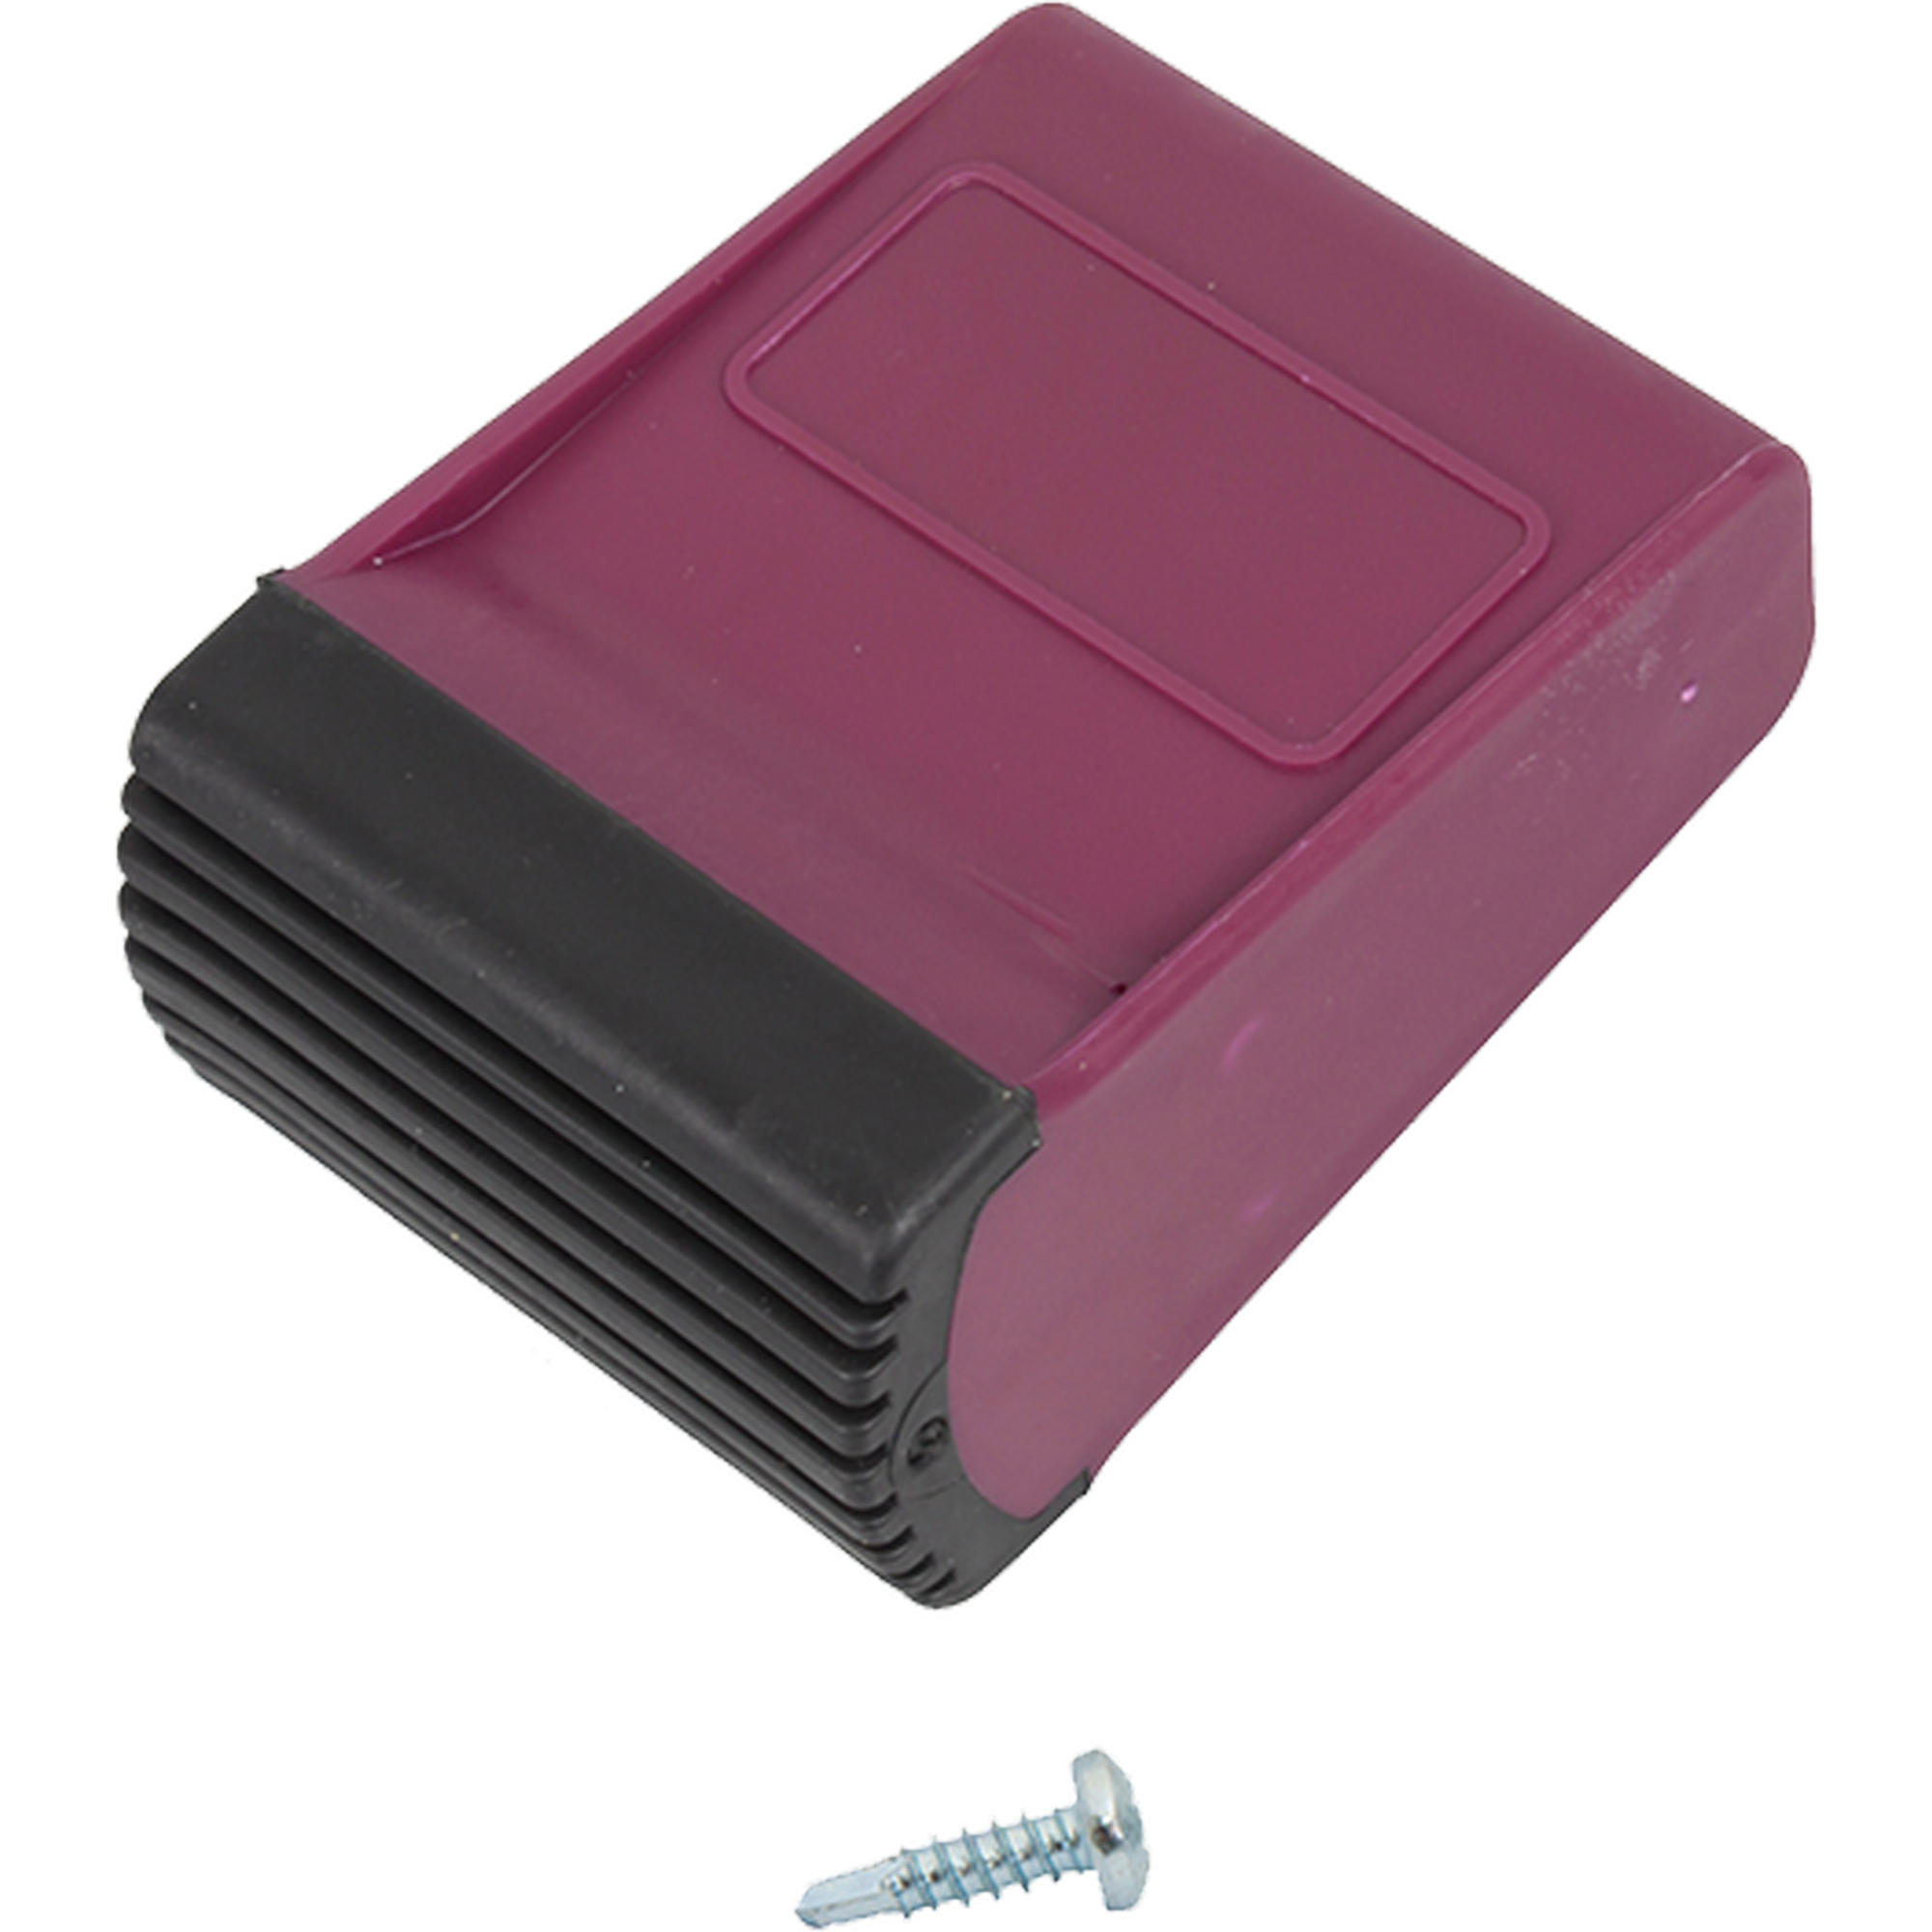 Traversenfußkappe für Stufenleitern schwarz/violett 64 x 25 mm + product picture